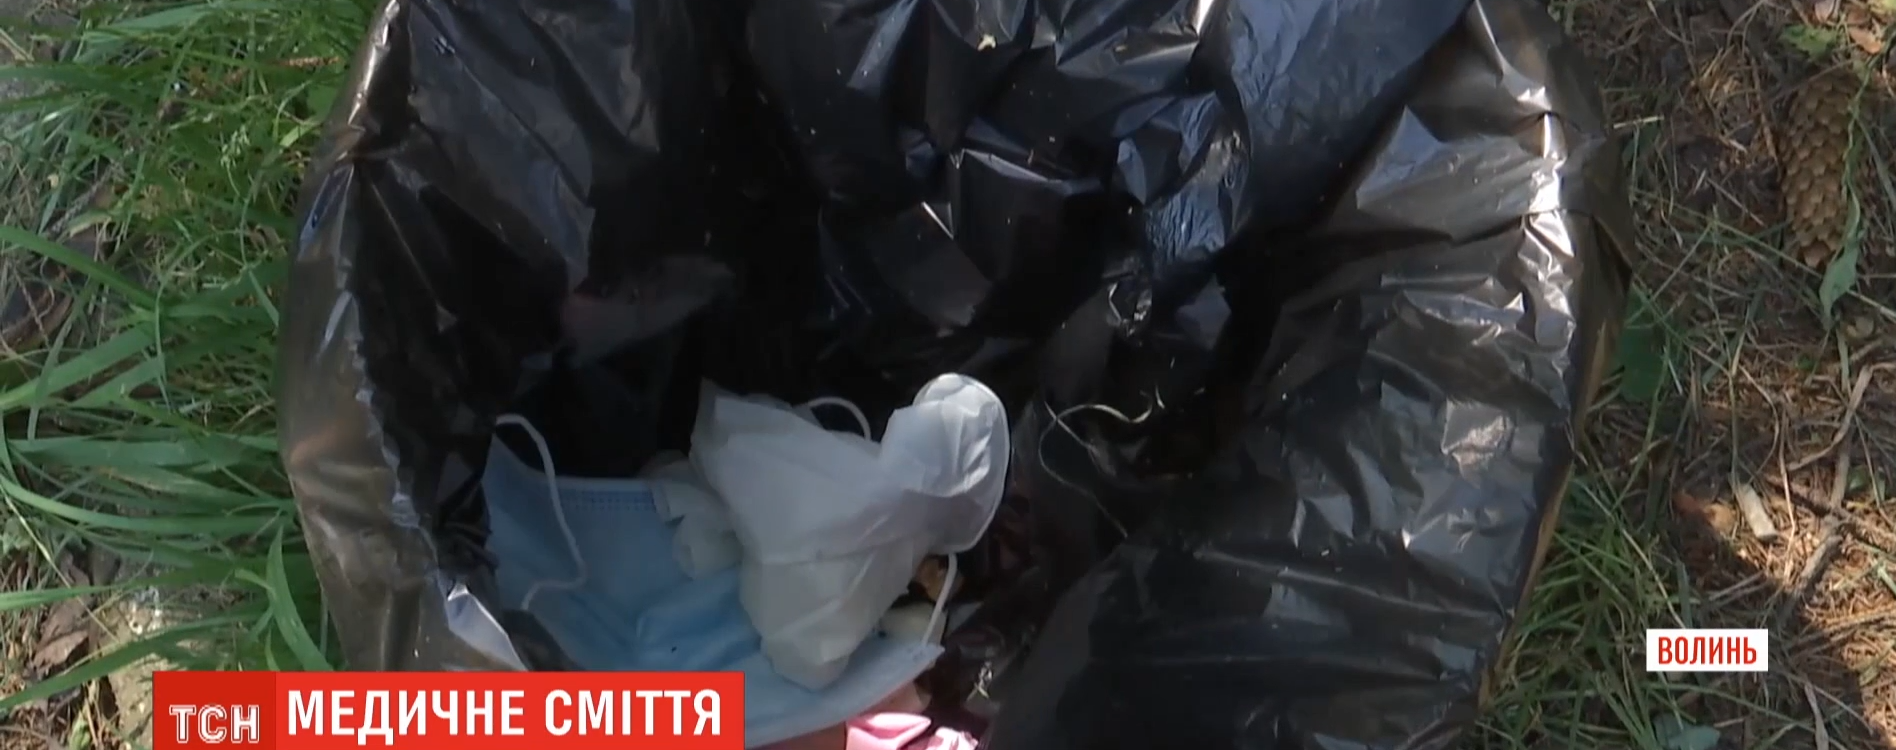 Звалище медичного сміття біля лабораторії у Луцьку: хто викинув небезпечні речі і чи прибрали їх